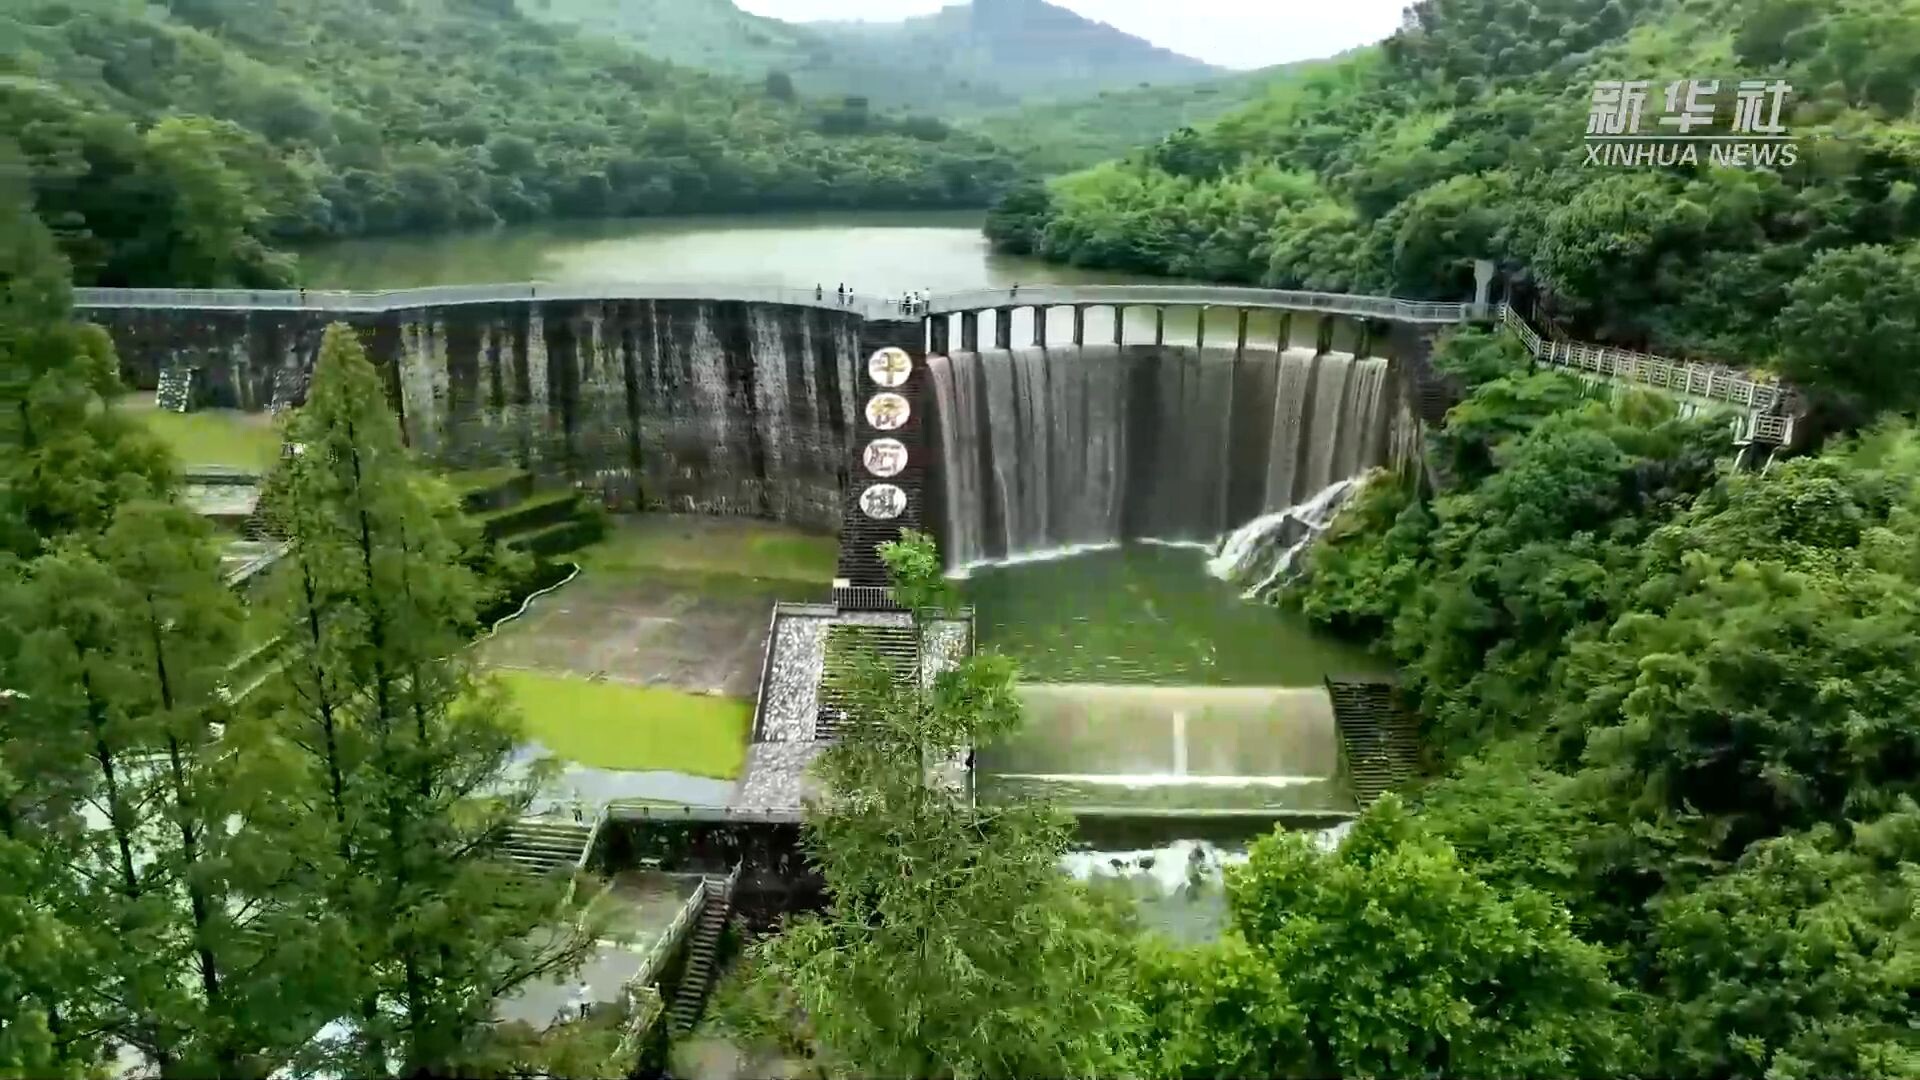 อ่างเก็บน้ำในเจียงซู ระบายน้ำล้นเกิด 'กำแพงน้ำตก' งดงาม